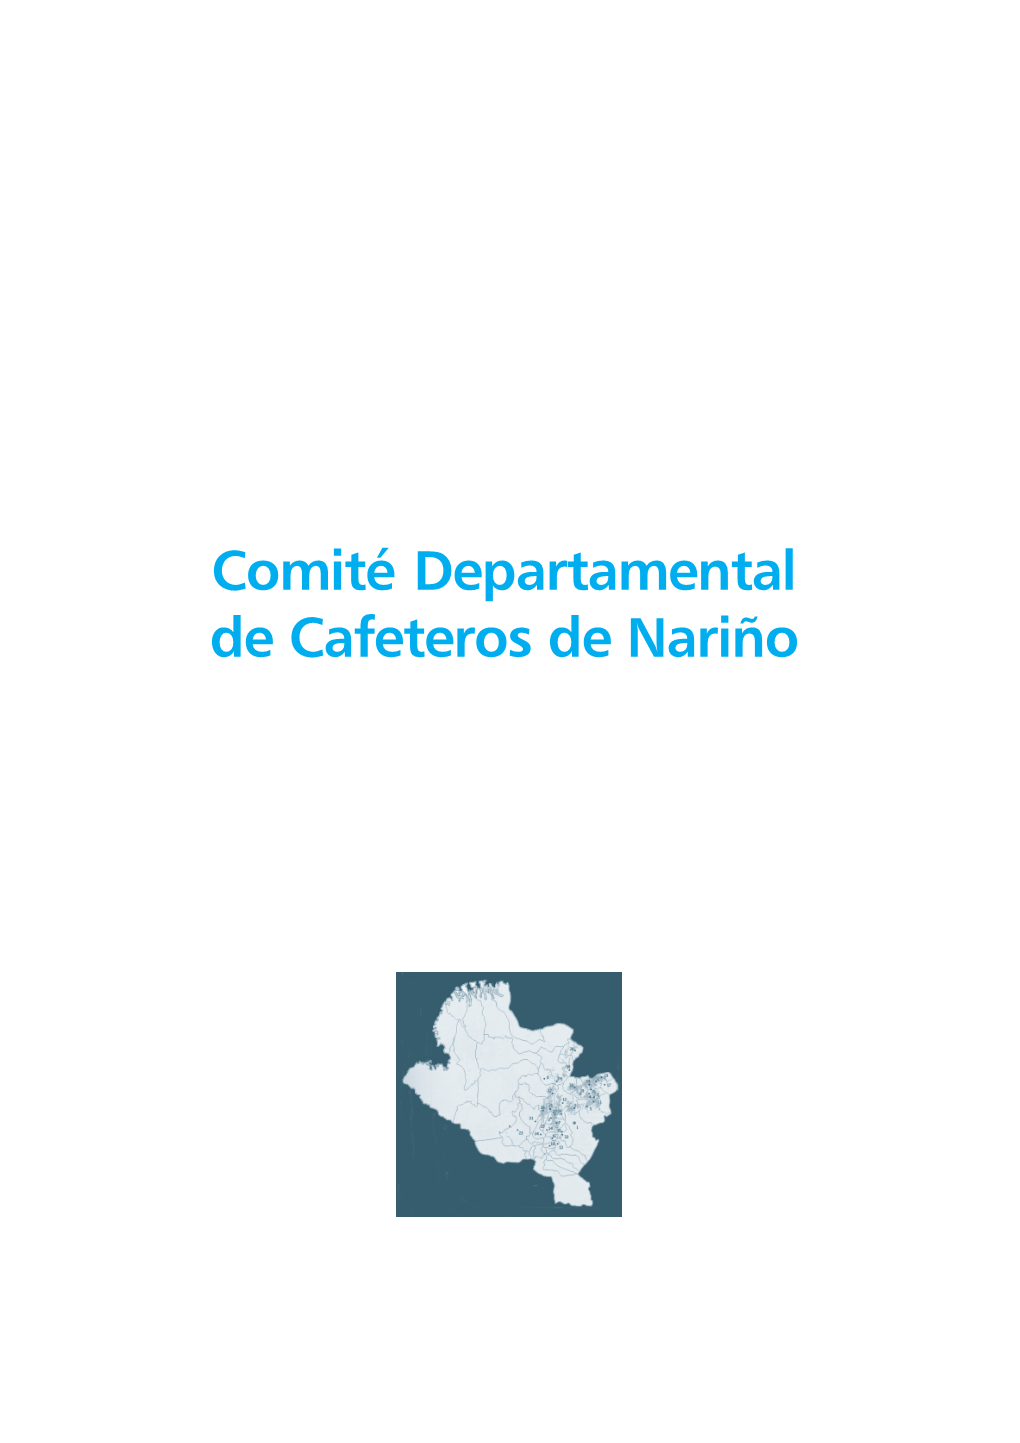 Comité Departamental De Cafeteros De Nariño 98 R ENOVACIÓN : C OMPROMISO C AFETERO I NFORME C OMITÉS D EPARTAMENTALES 99